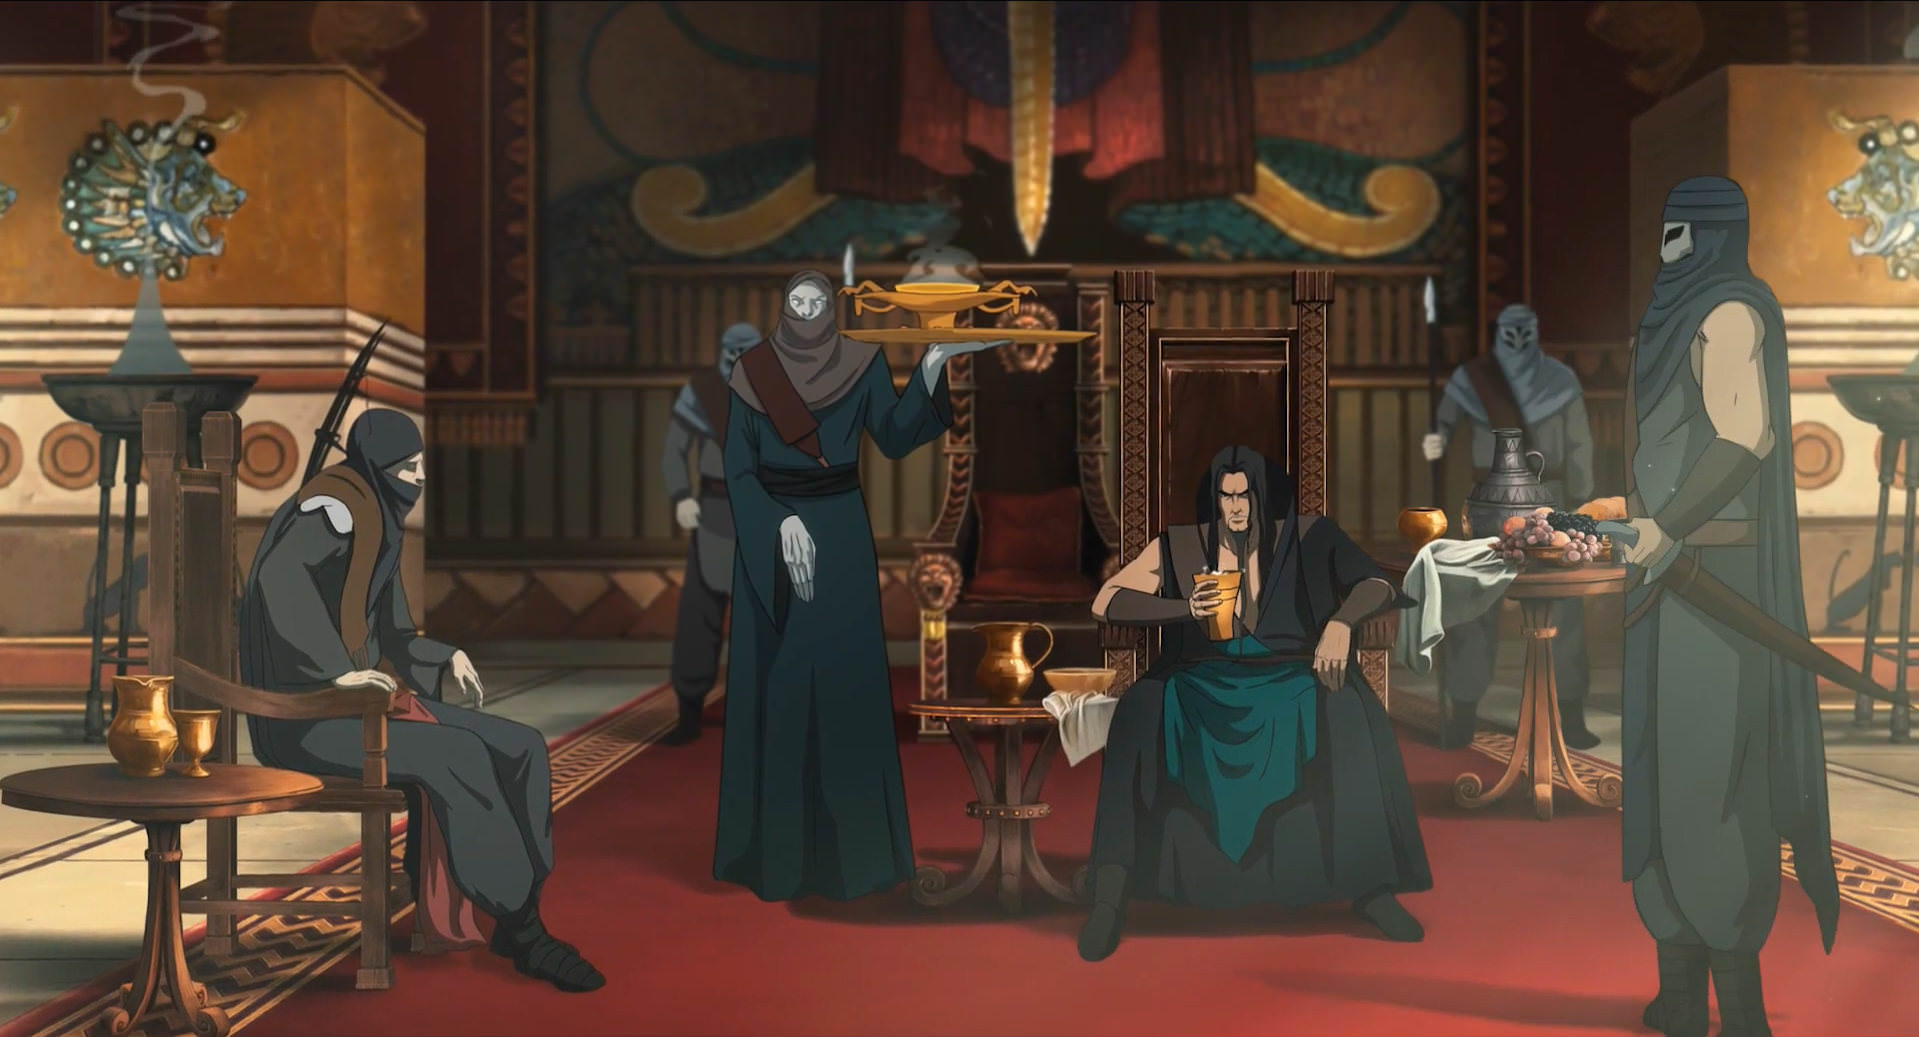 ضحاک نشسته بر تخت سلطنت مشغول عیاشی در انیمیشن آخرین داستان